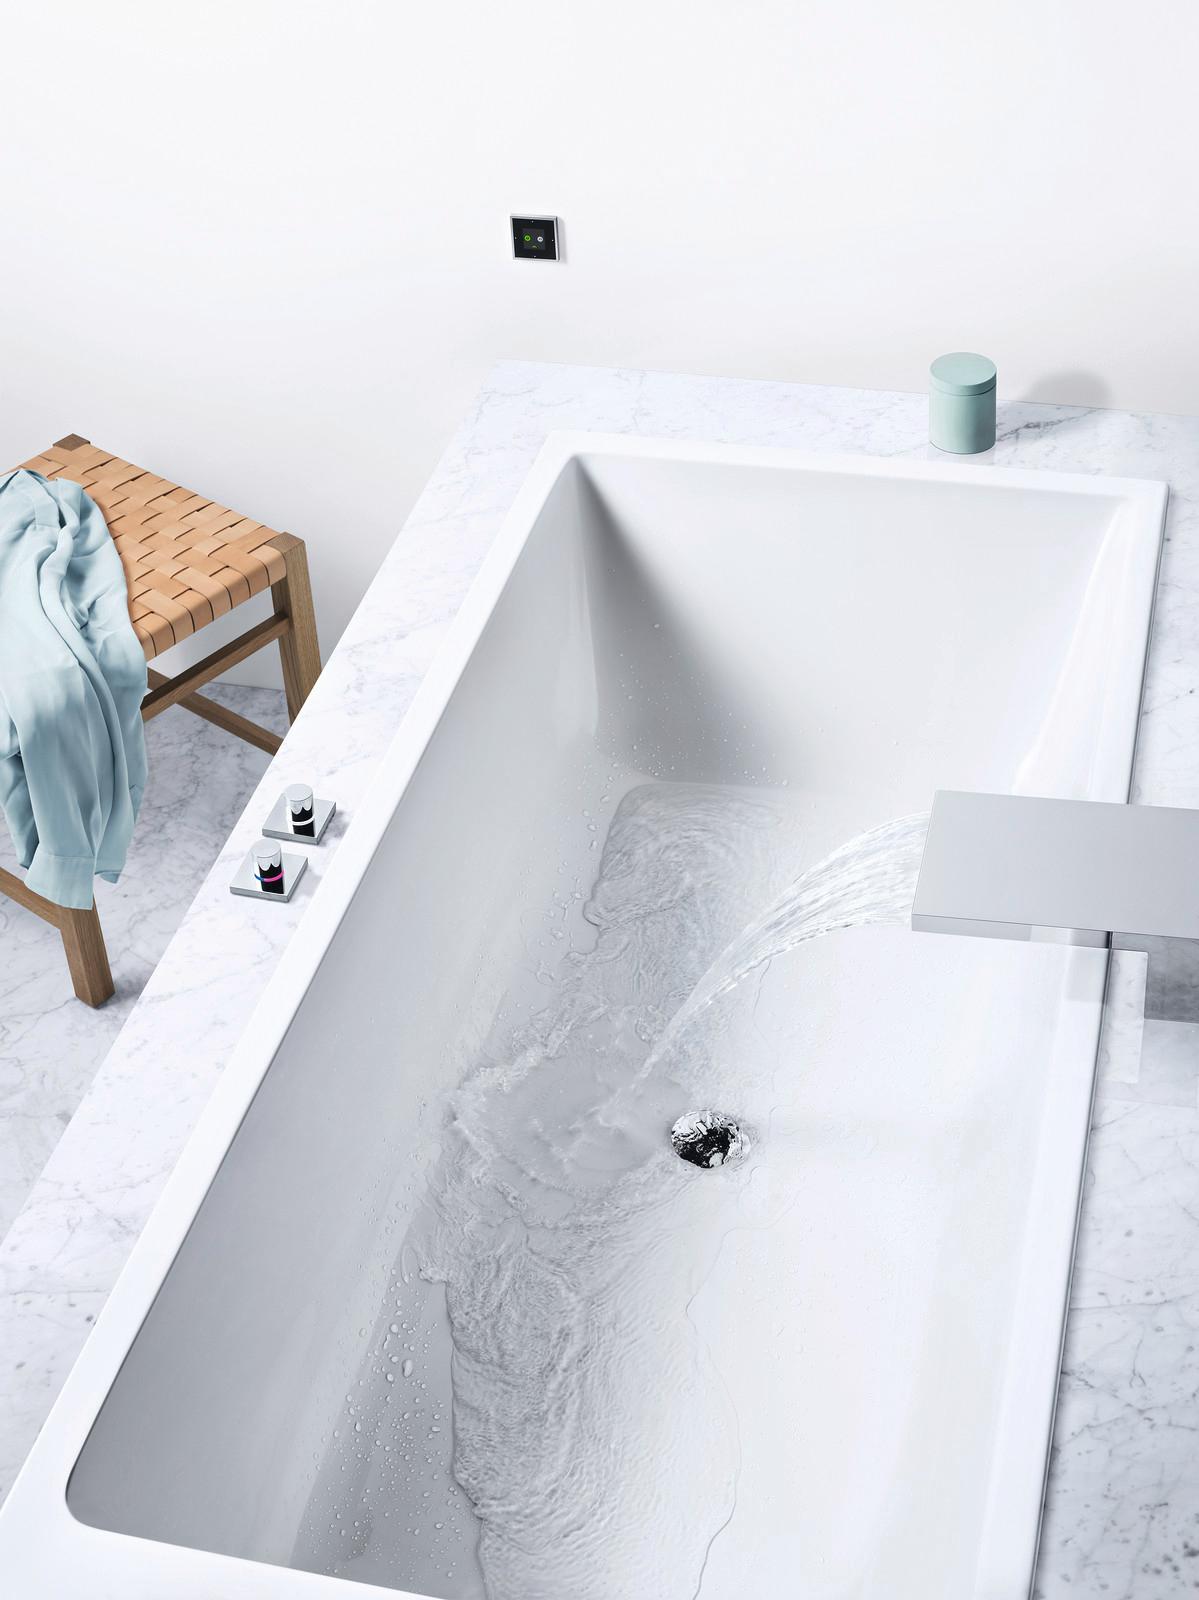 Badewanne mit "Smart Tools" von Dornbracht #badewanne #badezimmereinrichtung #smarthome #modernebadewanne ©Dornbracht